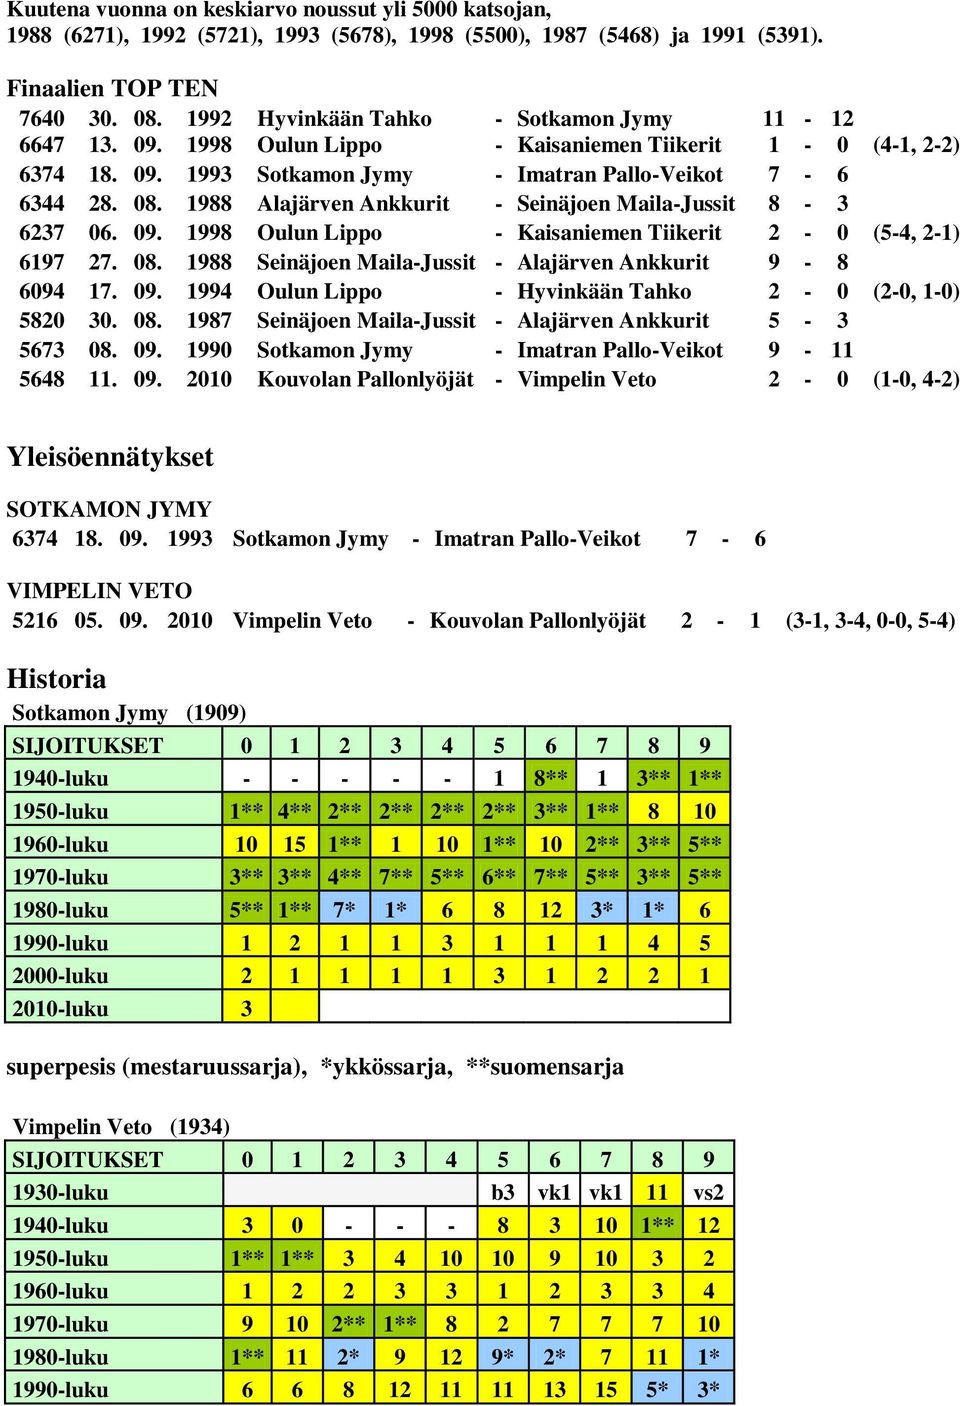 1988 Alajärven Ankkurit - Seinäjoen Maila-Jussit 8-3 6237 06. 09. 1998 Oulun Lippo - Kaisaniemen Tiikerit 2-0 (5-4, 2-1) 6197 27. 08. 1988 Seinäjoen Maila-Jussit - Alajärven Ankkurit 9-8 6094 17. 09. 1994 Oulun Lippo - Hyvinkään Tahko 2-0 (2-0, 1-0) 5820 30.